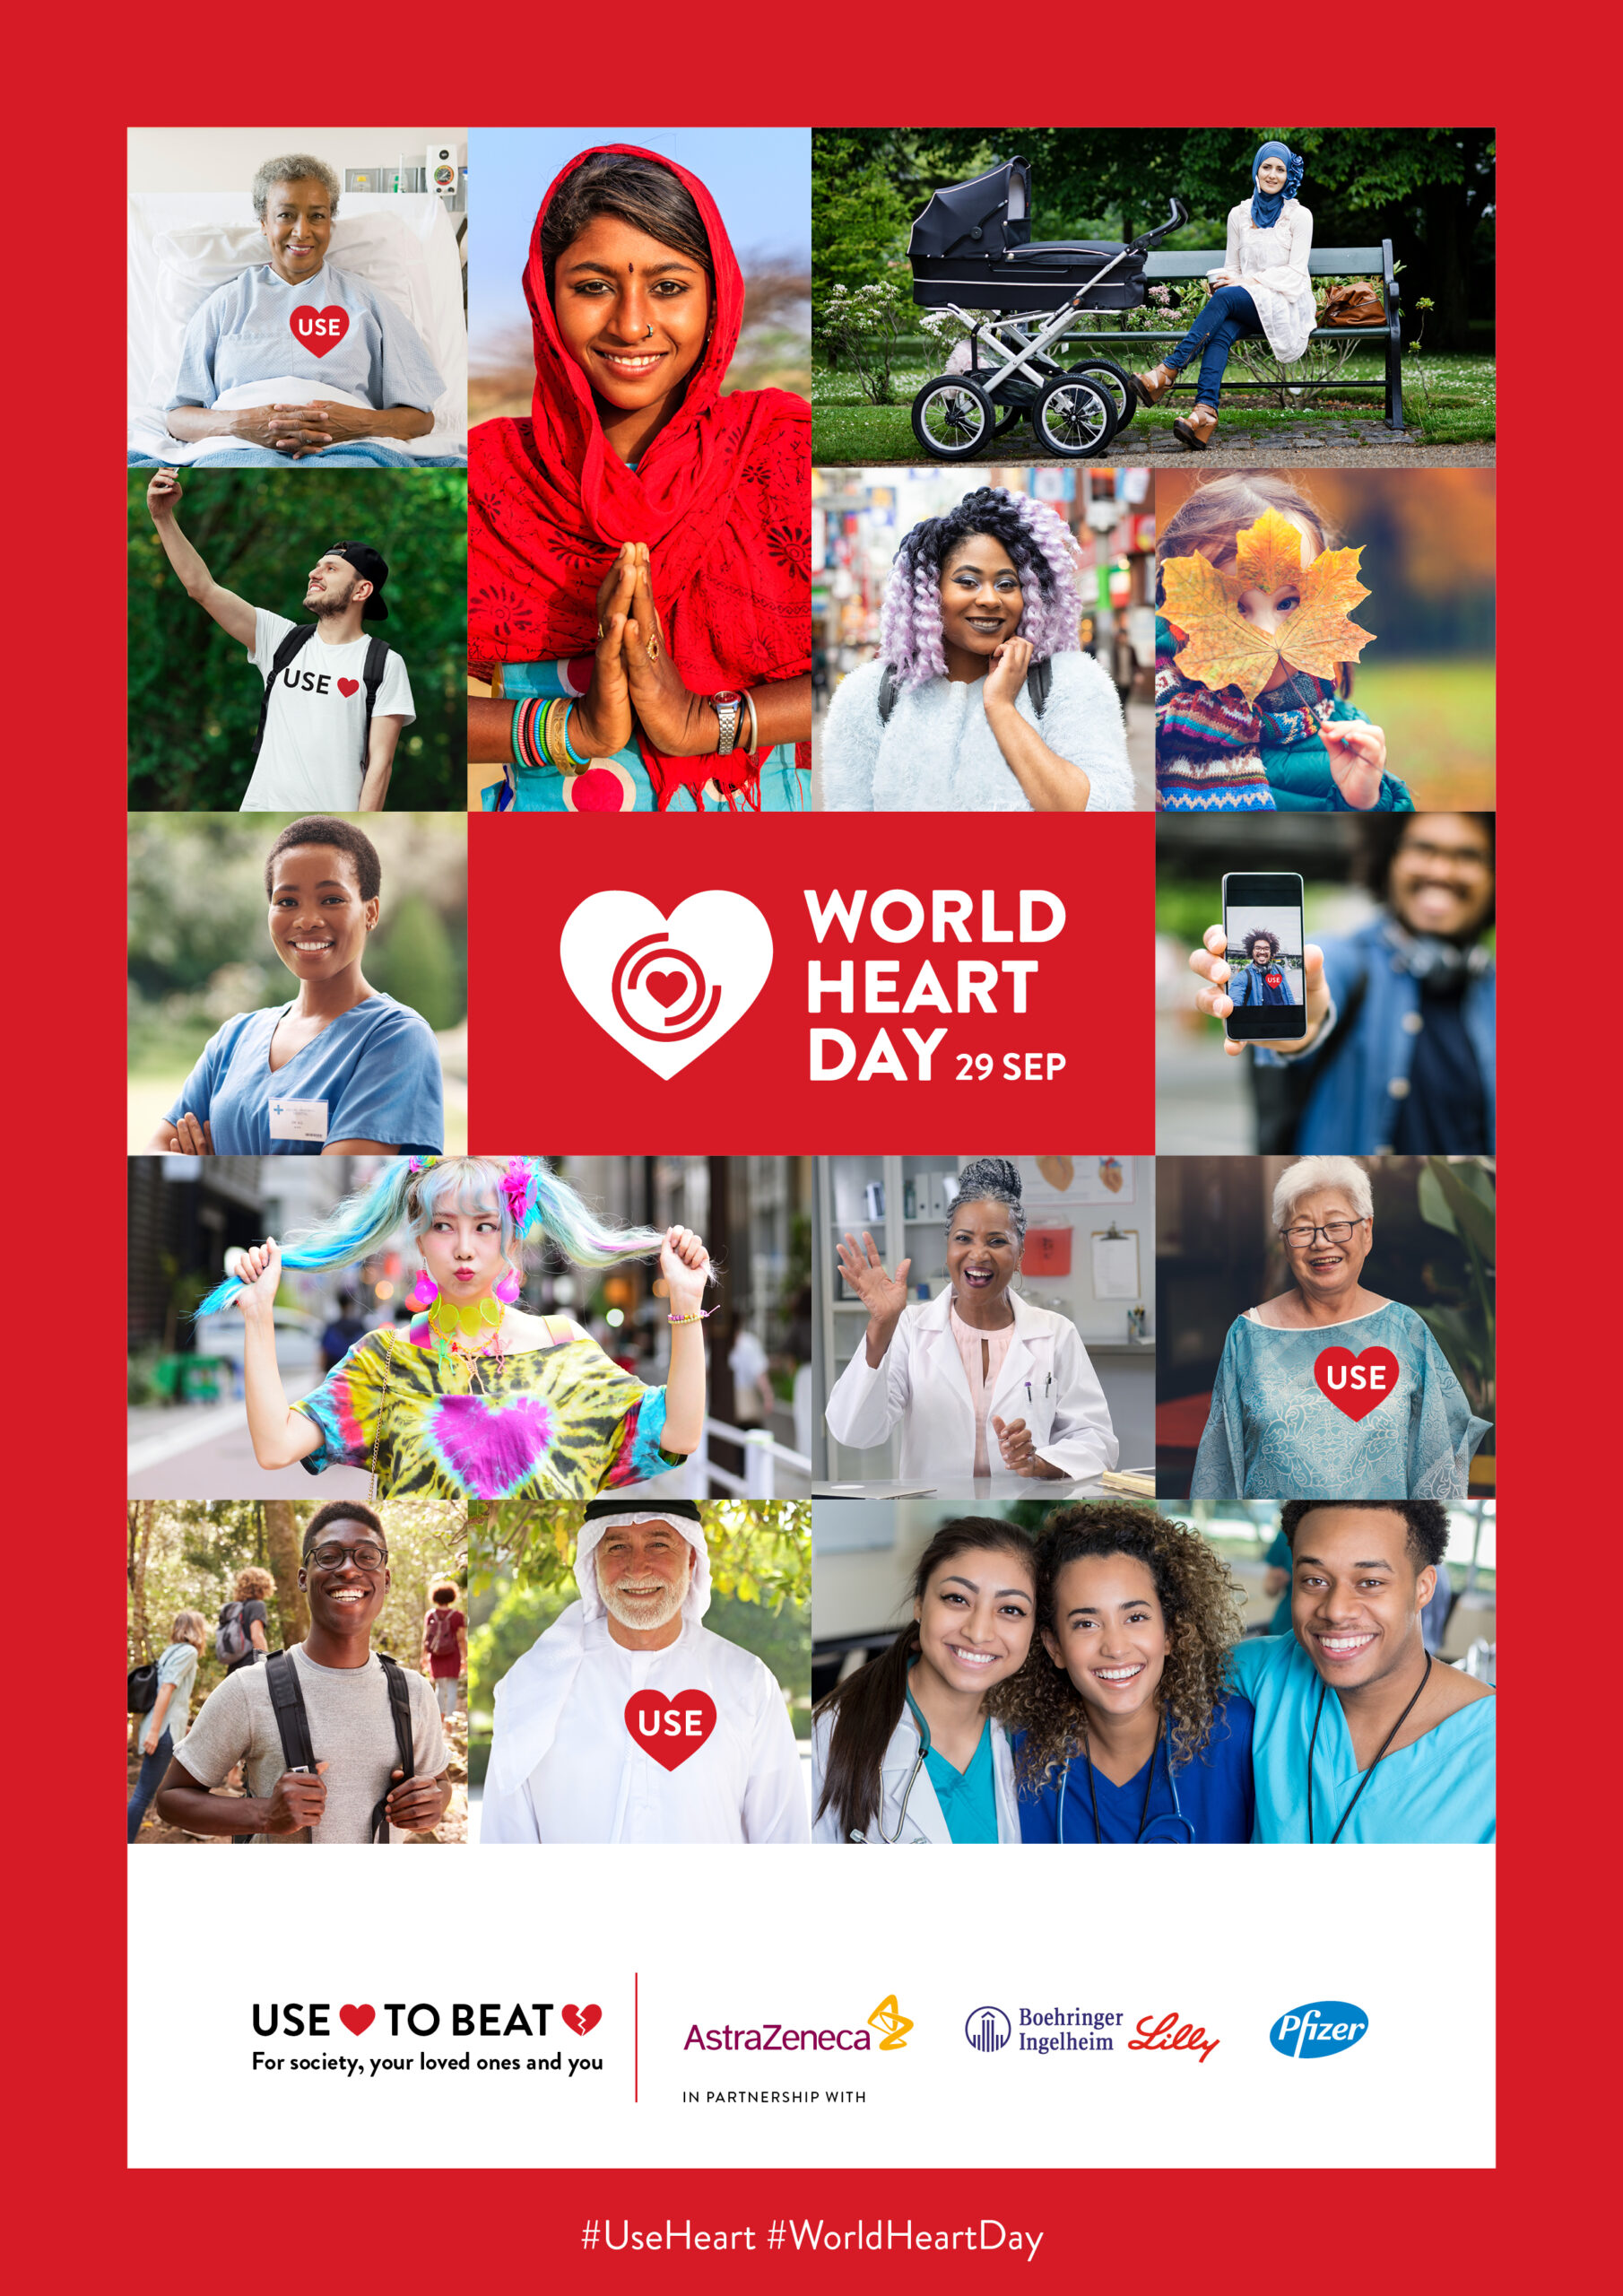 World Heart Day 2020